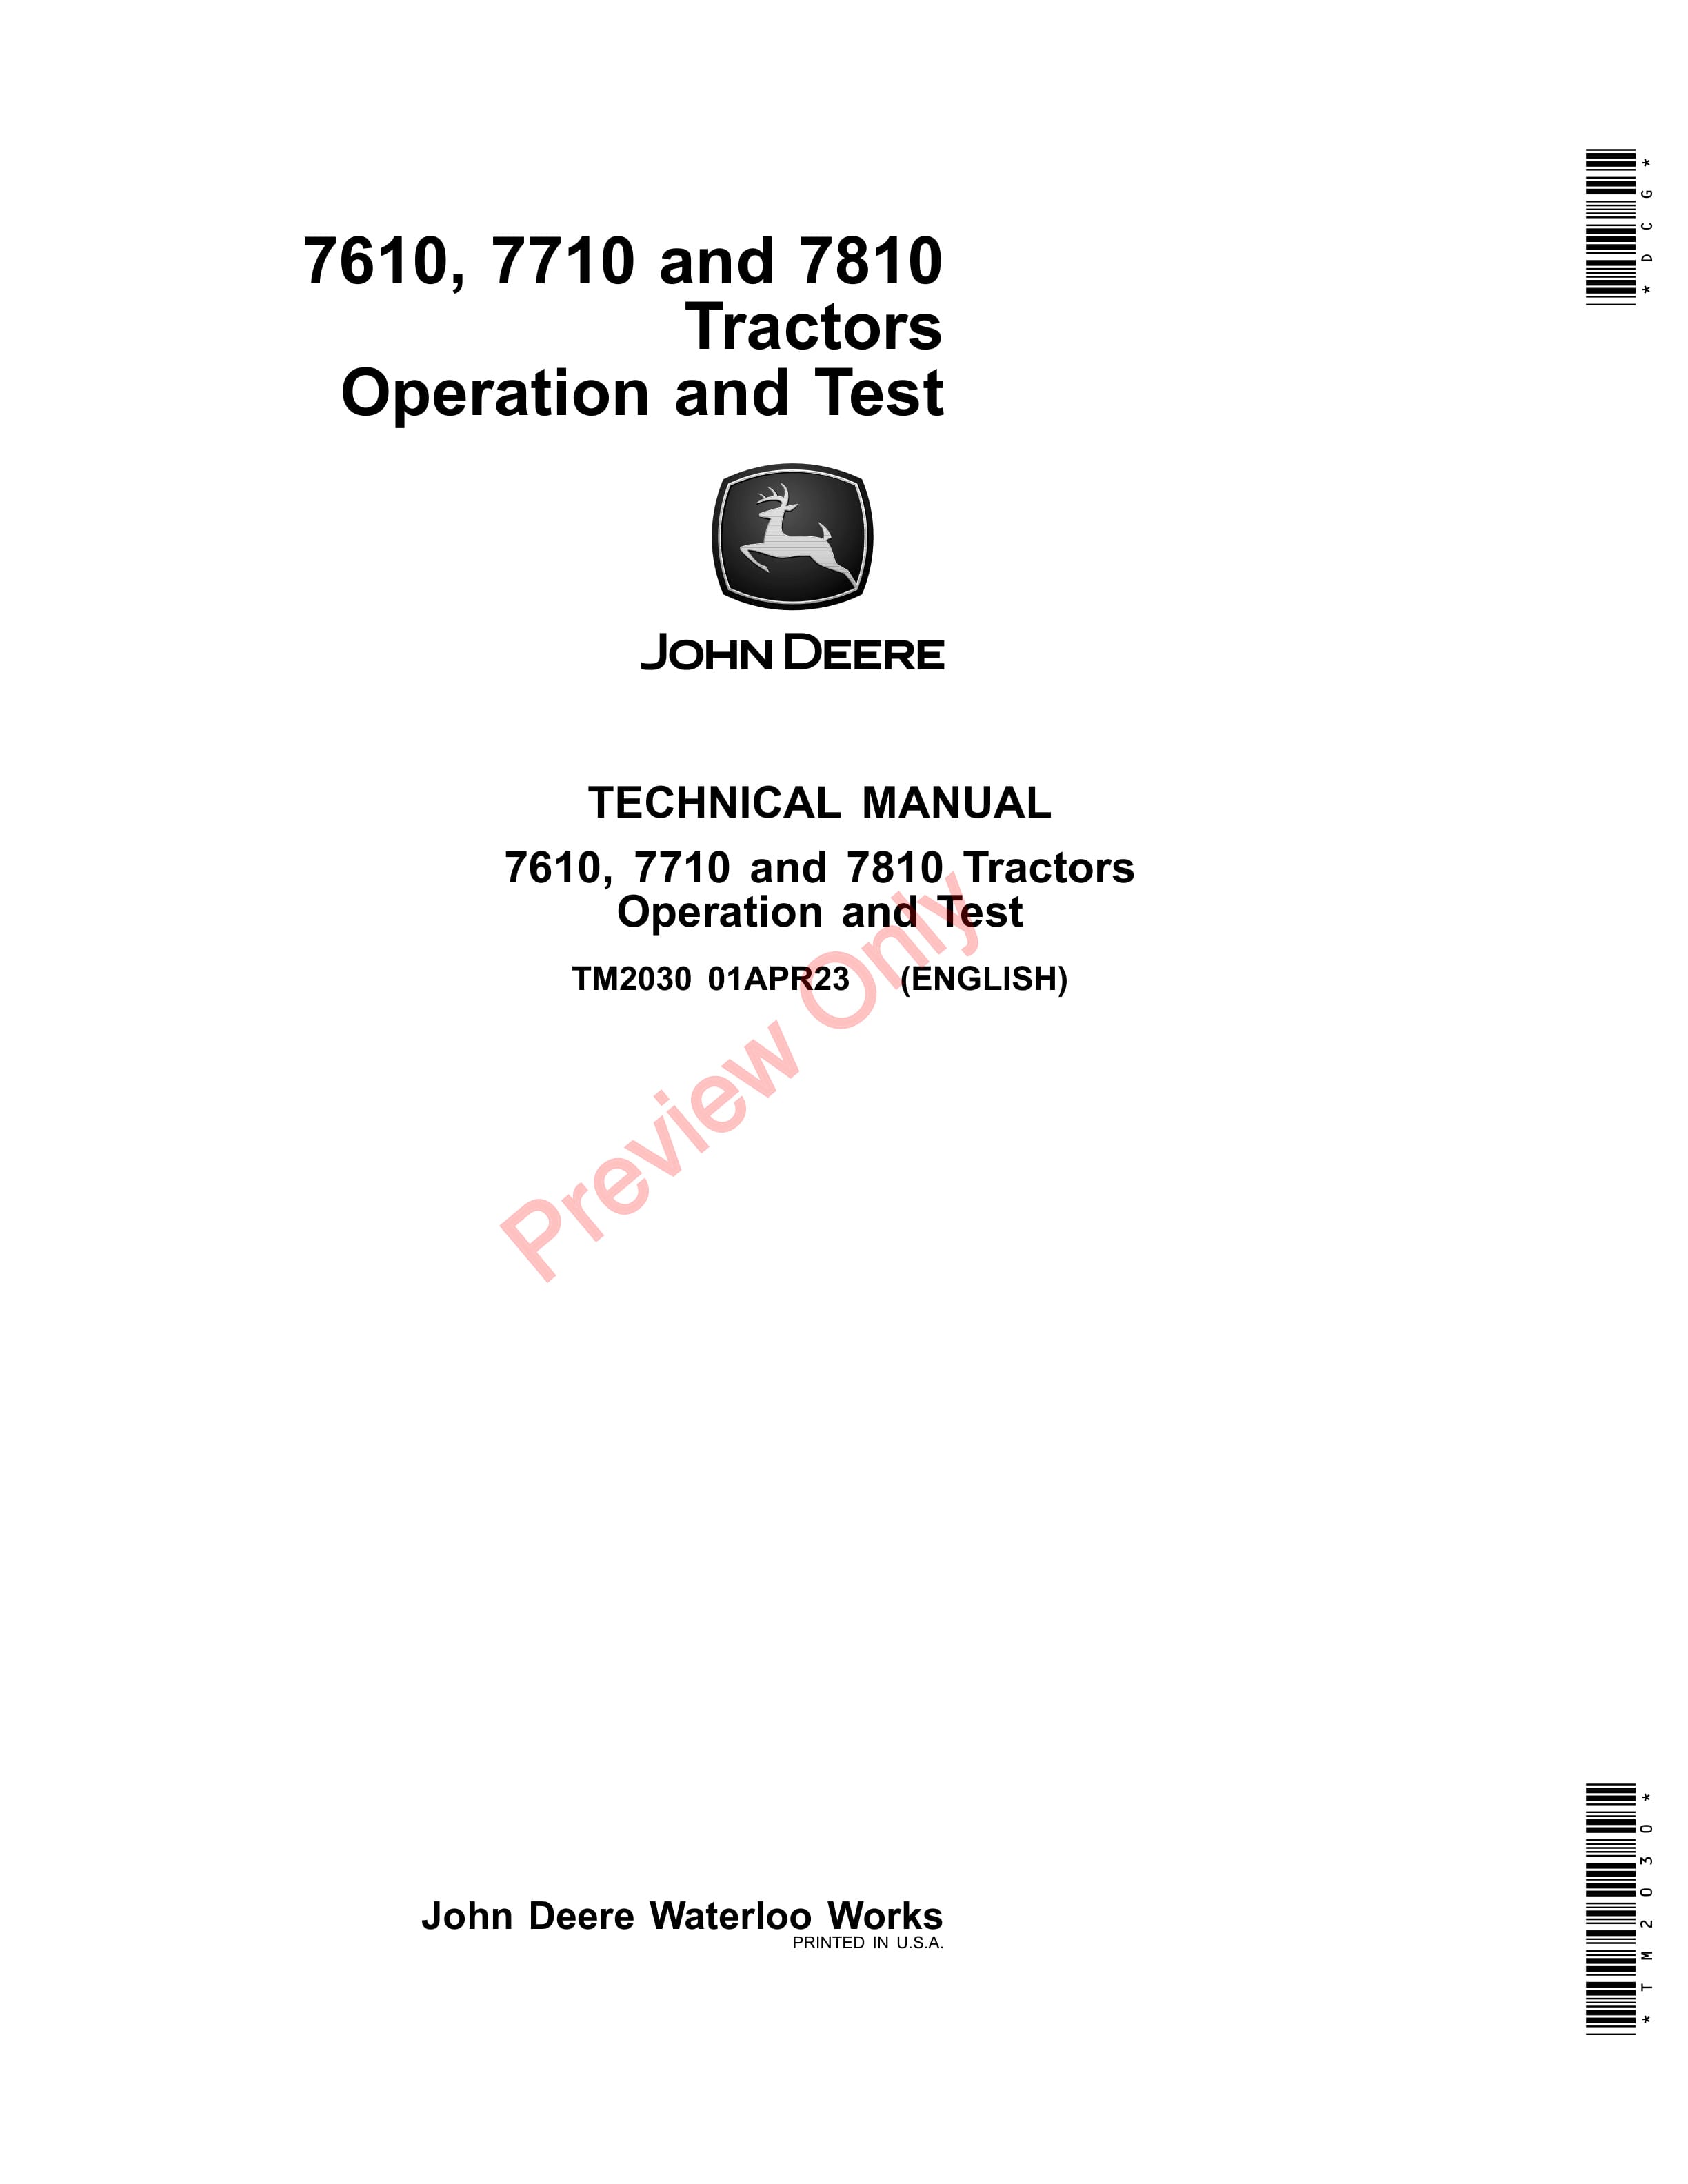 John Deere 7610 7710 and 7810 Tractors Technical Manual TM2030 01APR23 1